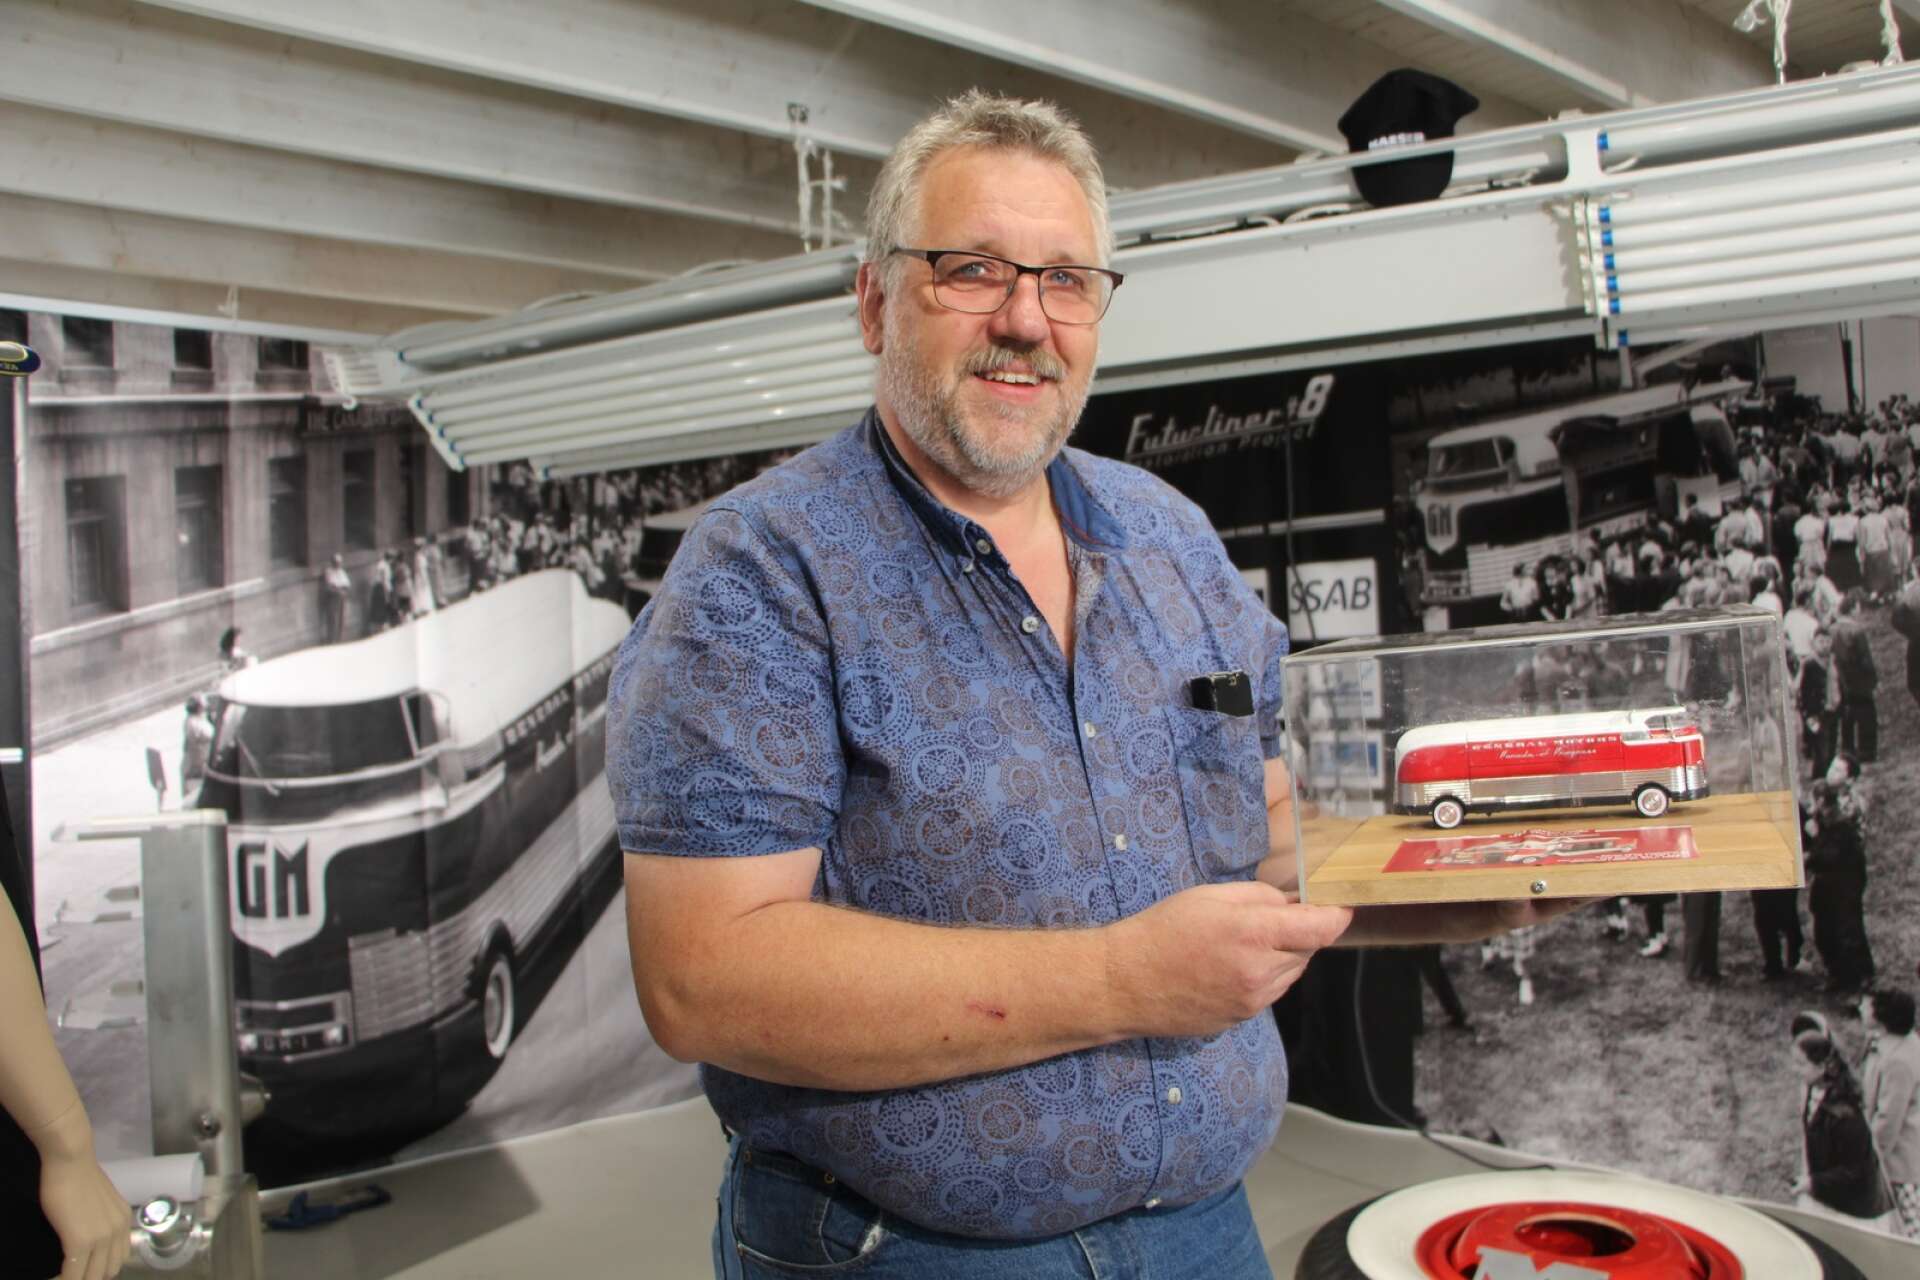 Arvika fordonsmuseums intendent Kalle Evrell visar upp en modell av en Futurline som var GM:s utställningsbuss.